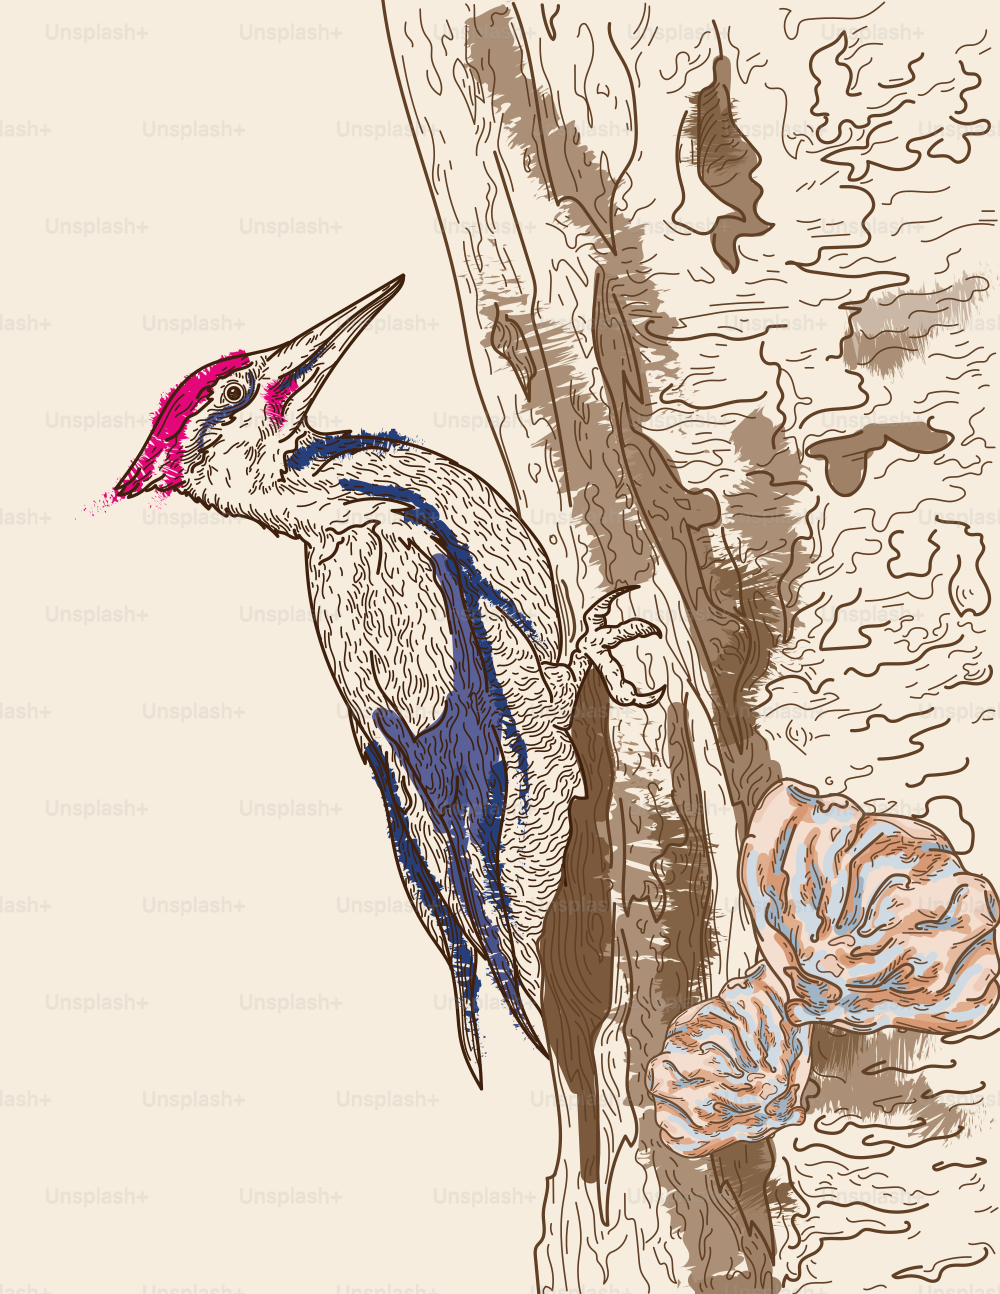 Arte de linha altamente detalhada de um pica-pau empilhado empoleirado na lateral de uma árvore.